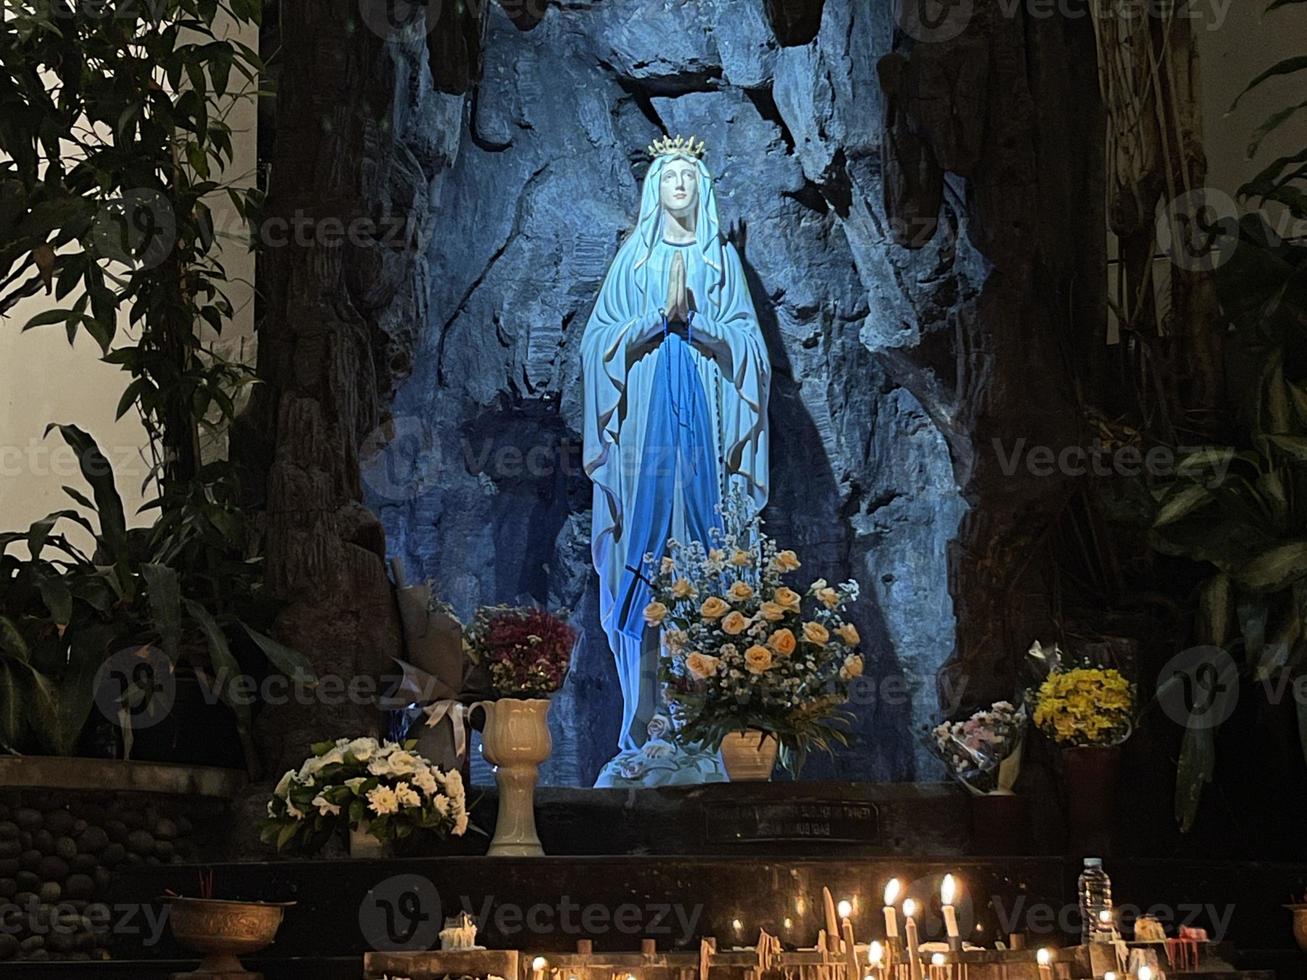 il grotta di vergine Maria, statua di vergine Maria nel un' roccia grotta cappella cattolico Chiesa con tropicale vegetazione foto